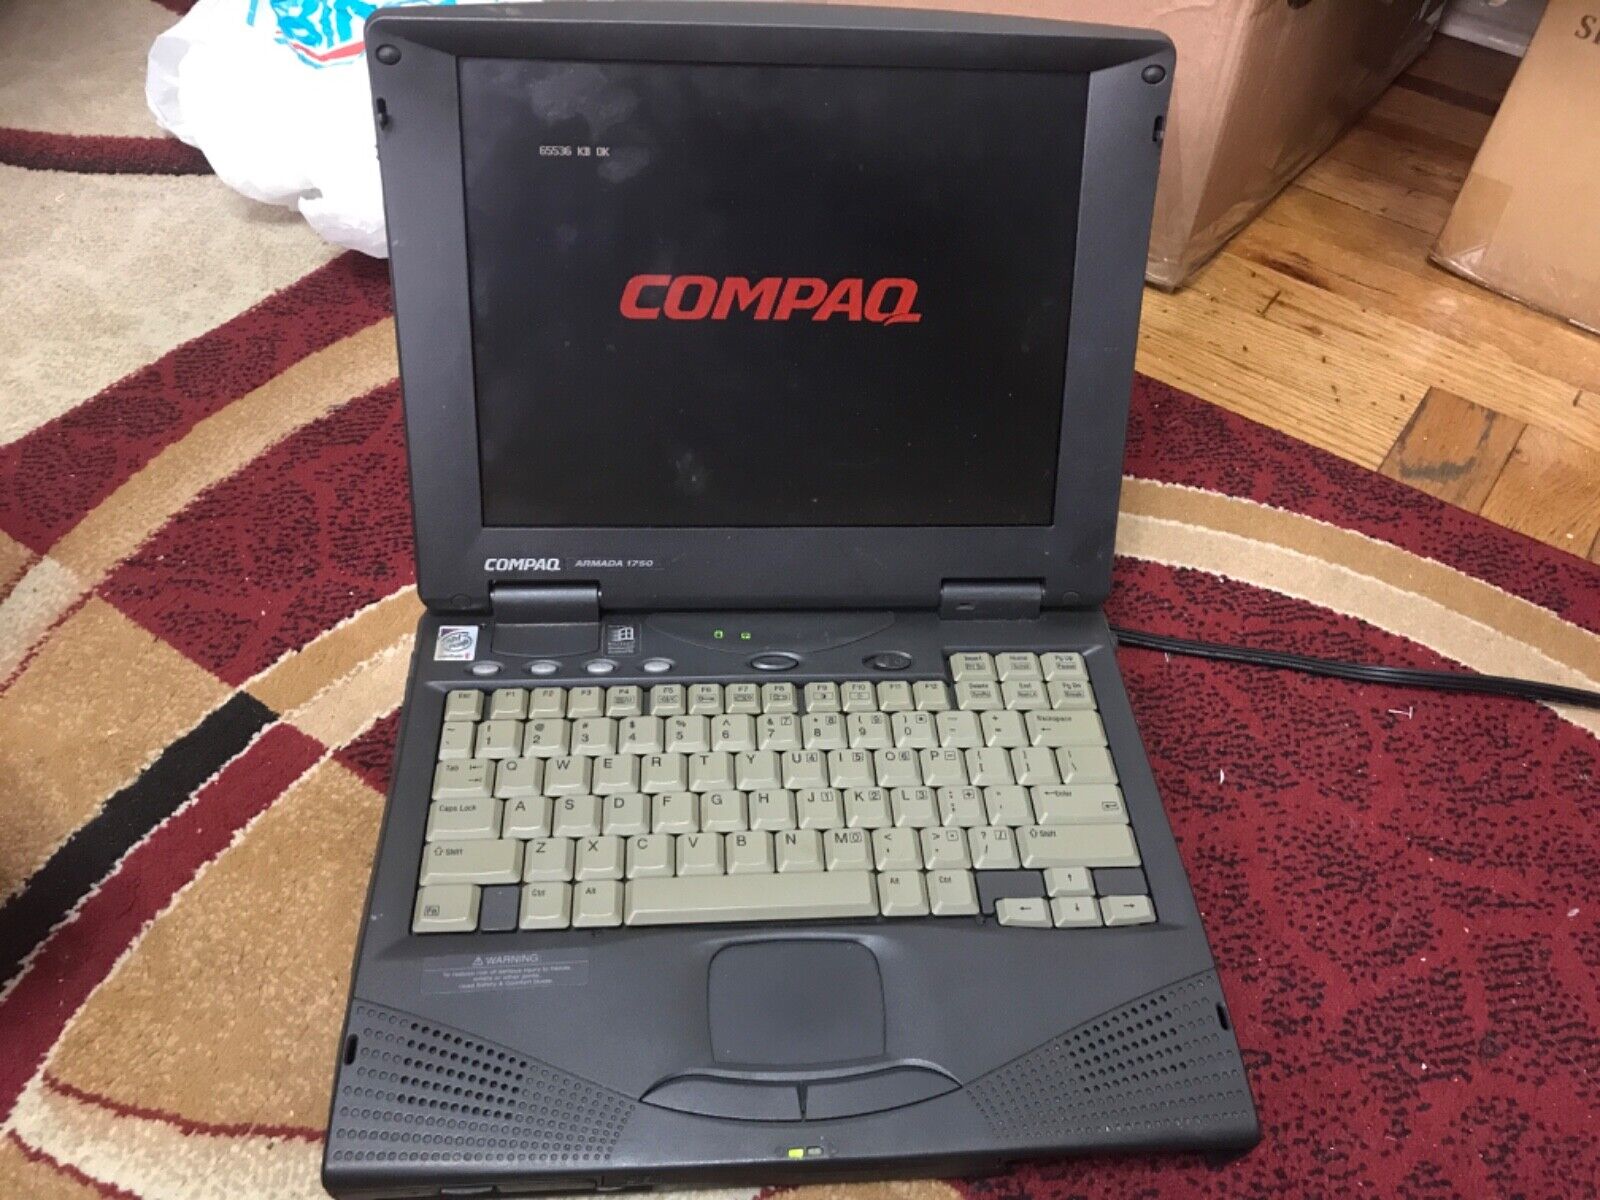 Compaq Armada 1750 Laptop no Hdd no OS Pentrium 2